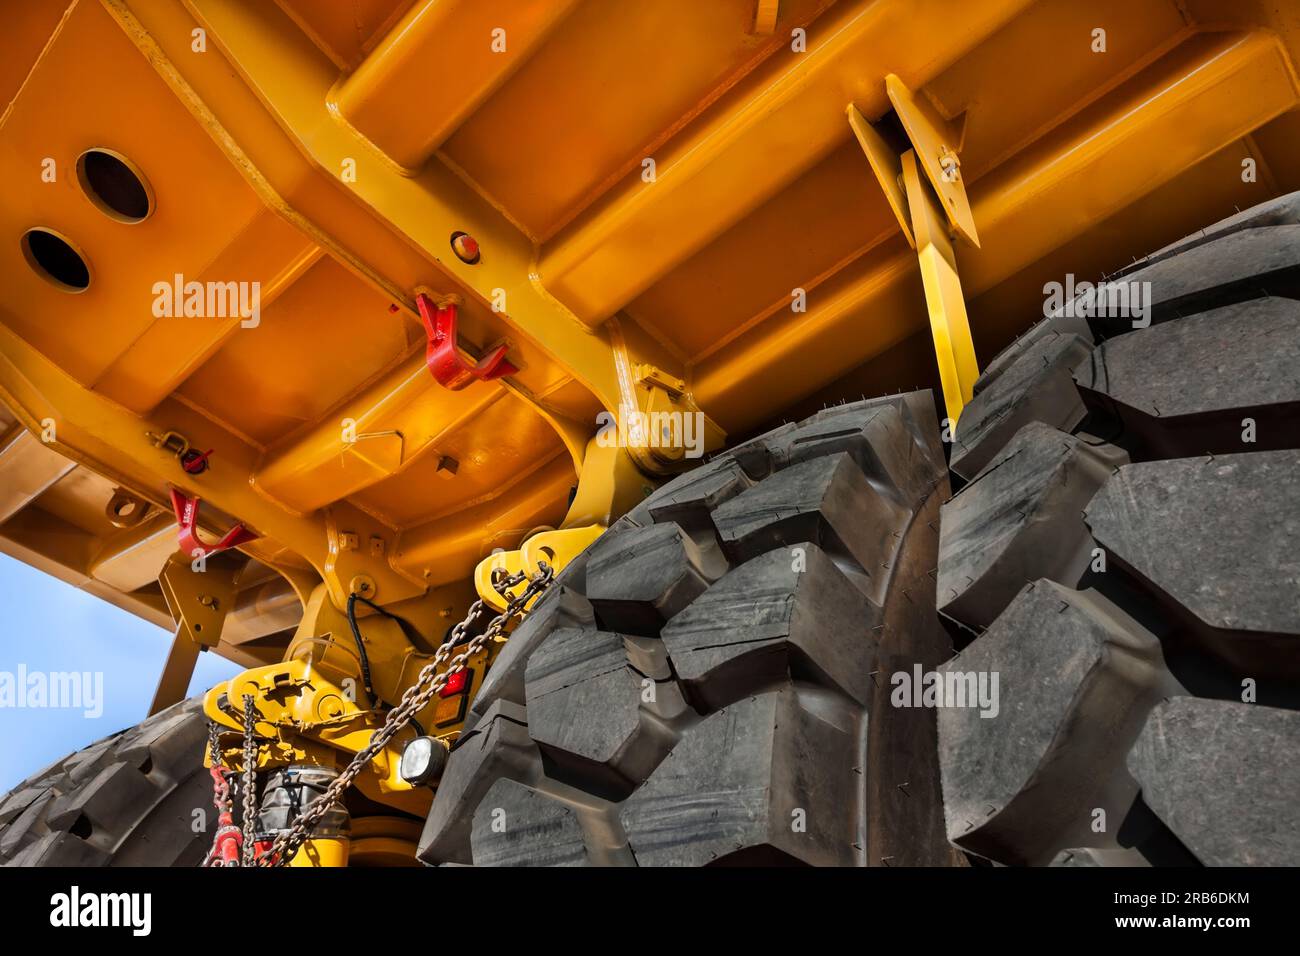 Überarbeitung der Aufhängung, Doppelachse unter einem riesigen, brandneuen gelben Bergbaufahrzeug, oben auf einem Anhänger, der in einer Diamantenmine geliefert wurde Stockfoto